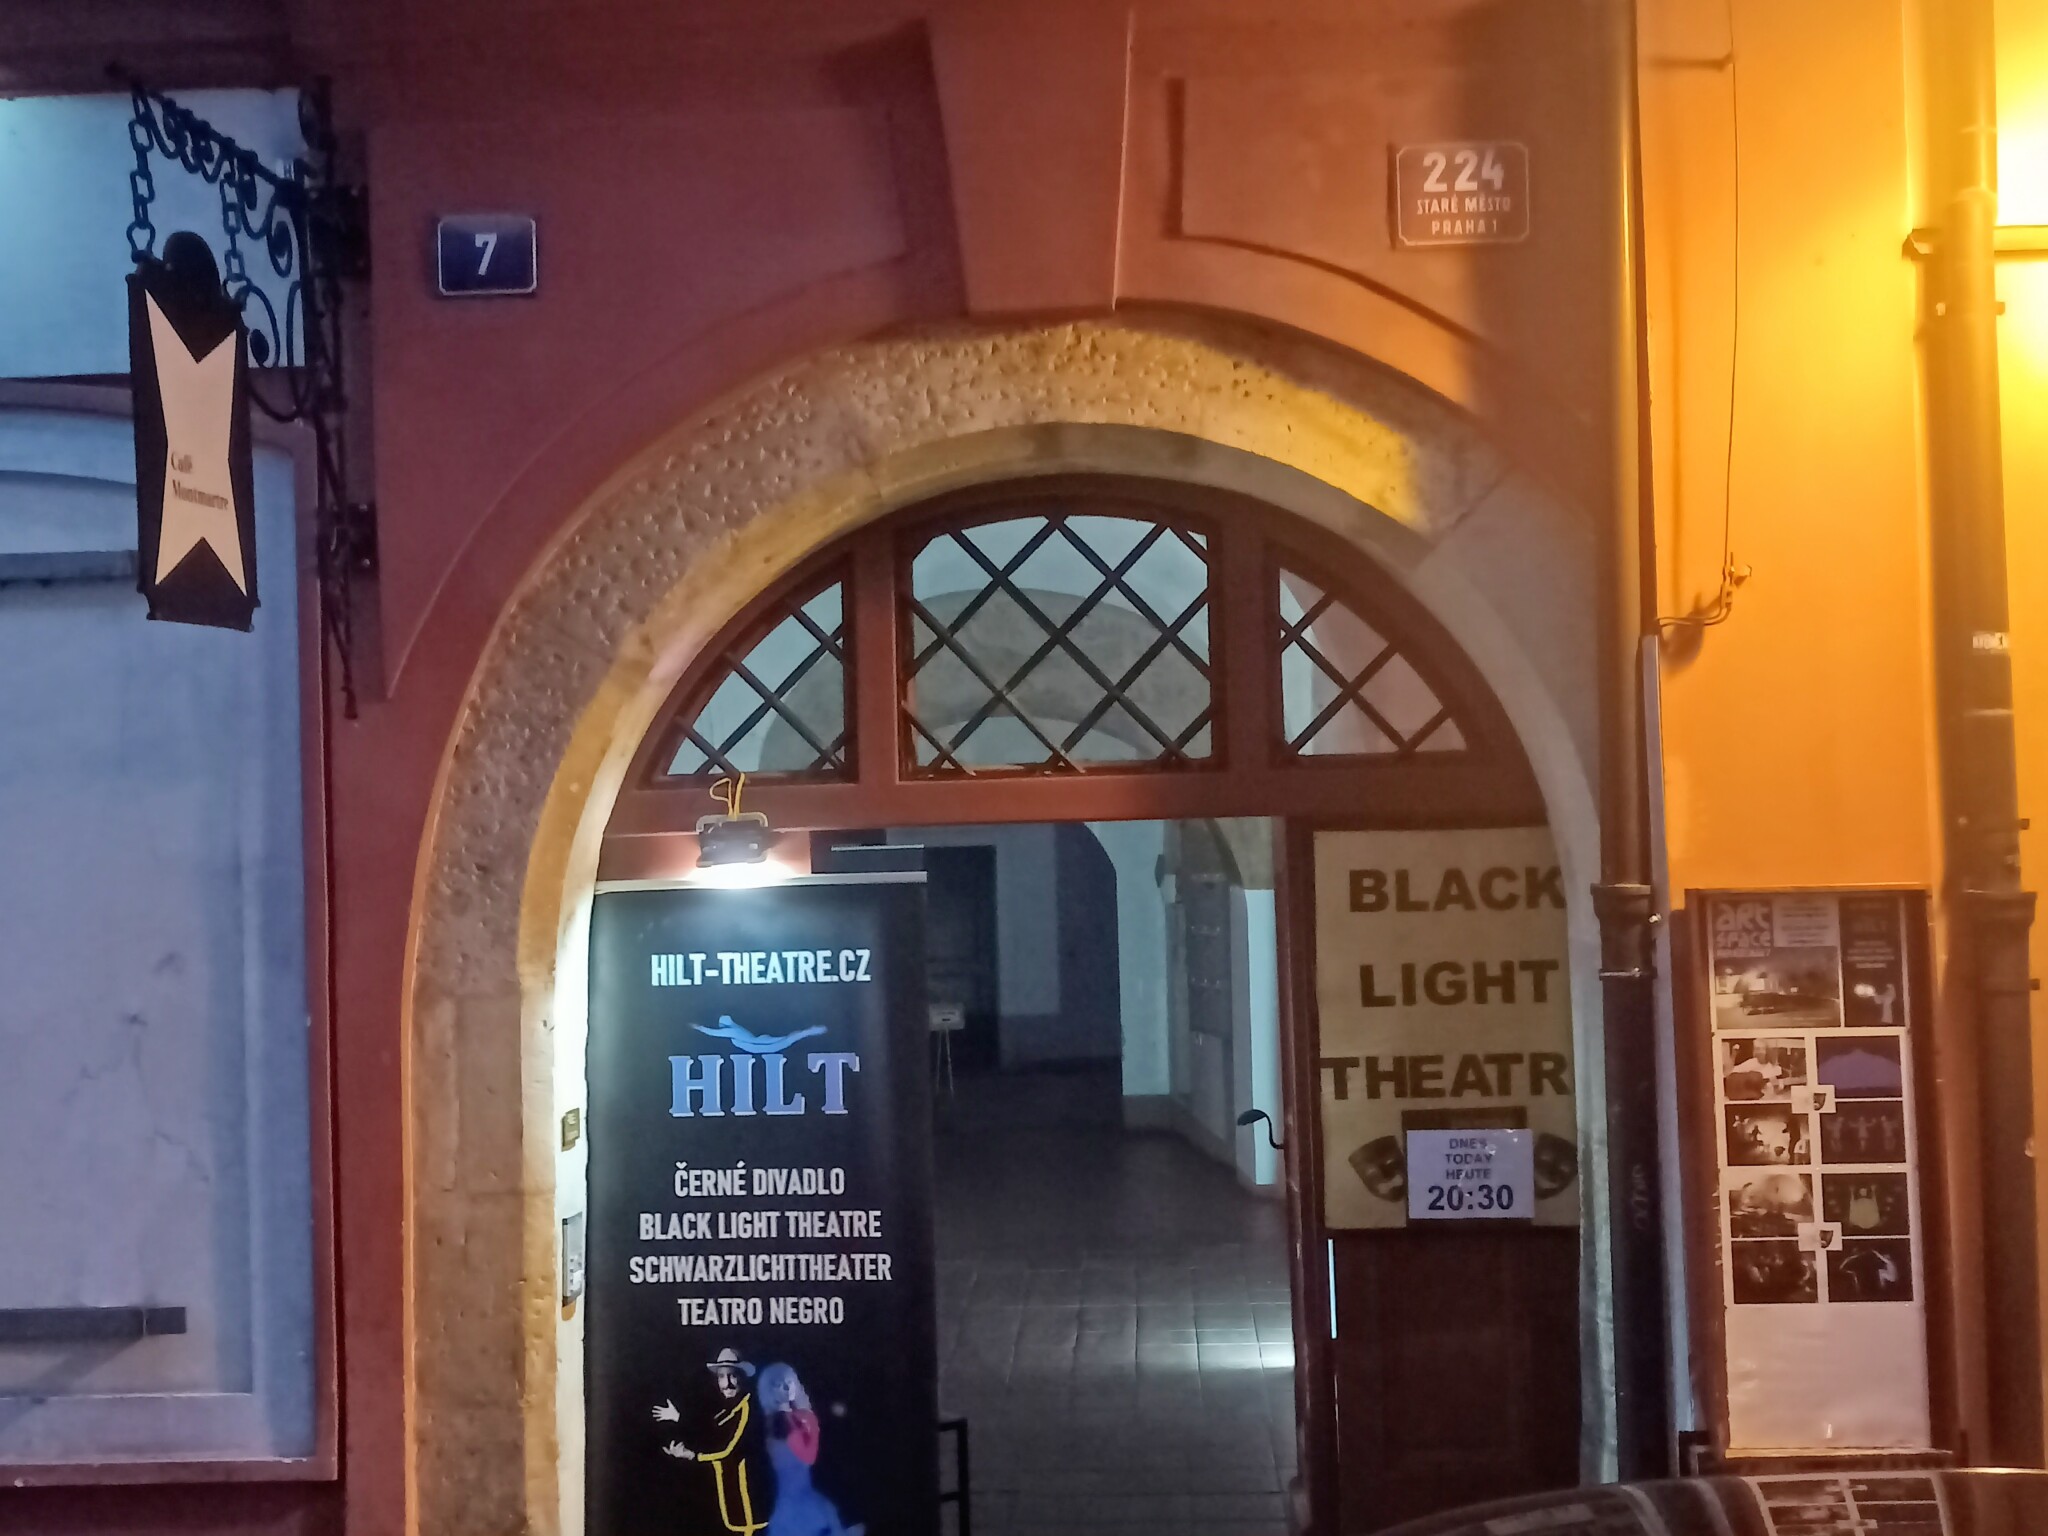 Black light theatre HILT entrance